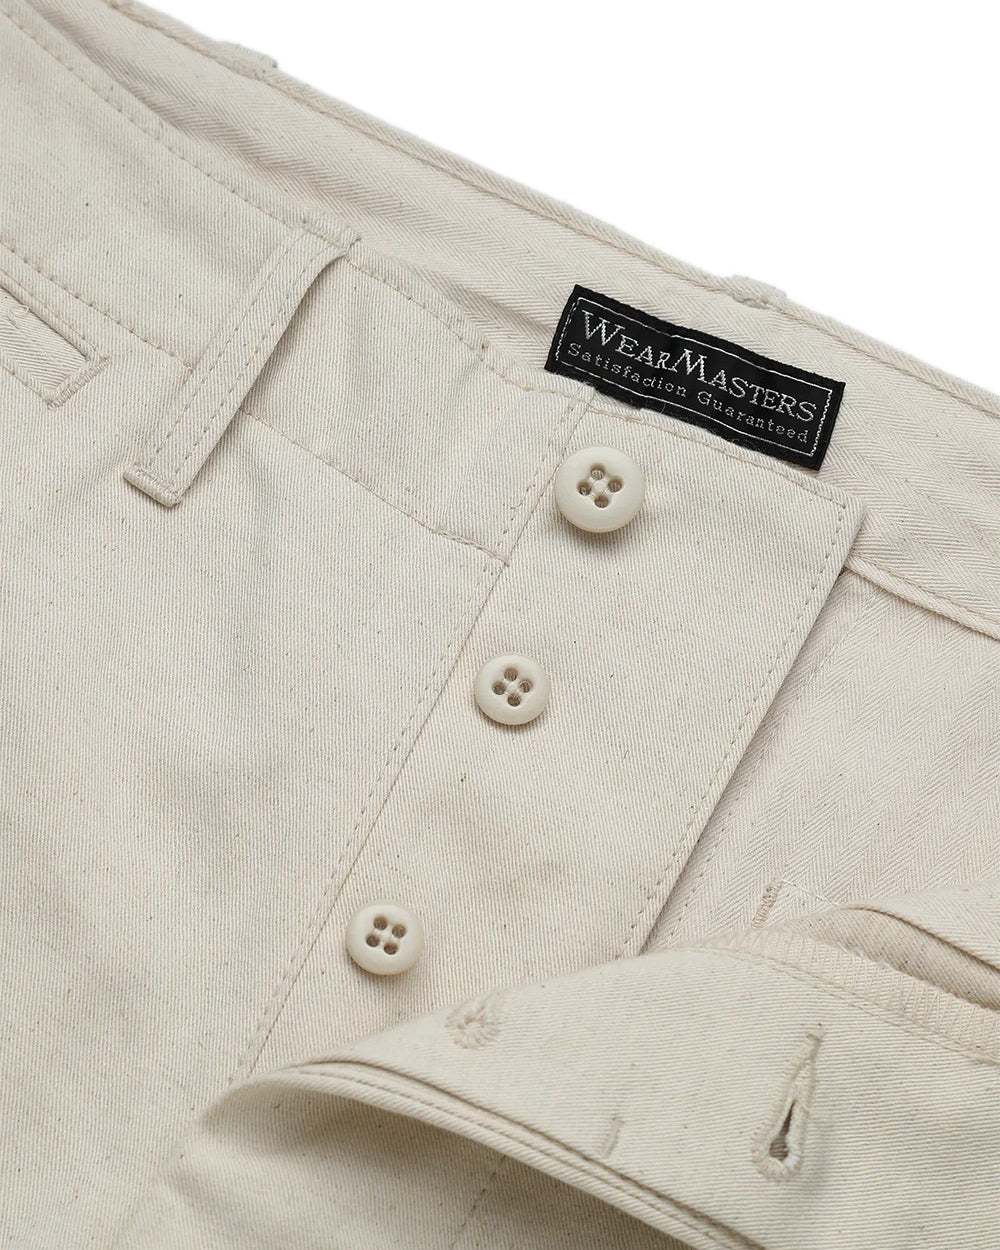 WearMasters - Lot.799 Milfolk CL Trousers (Natural)